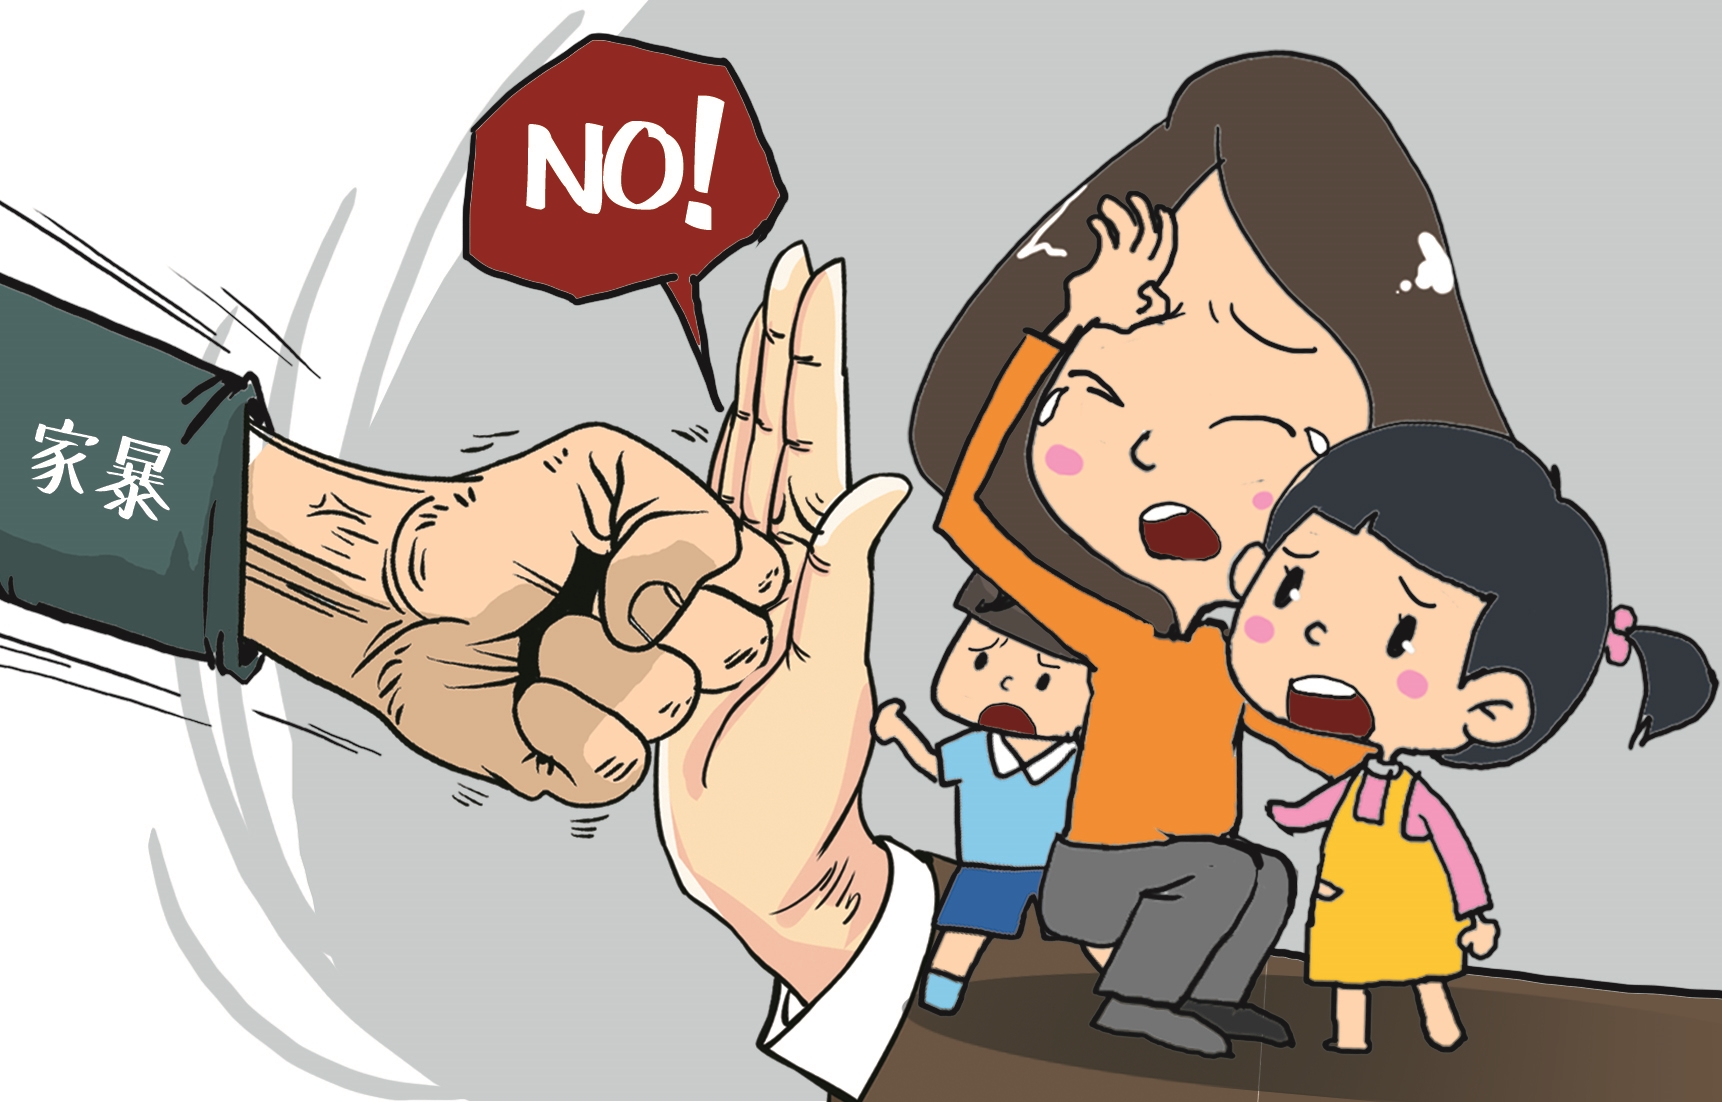 武汉市妇联相关负责人做客市民有约 提醒遭家暴时勇敢说"不" 家庭暴力